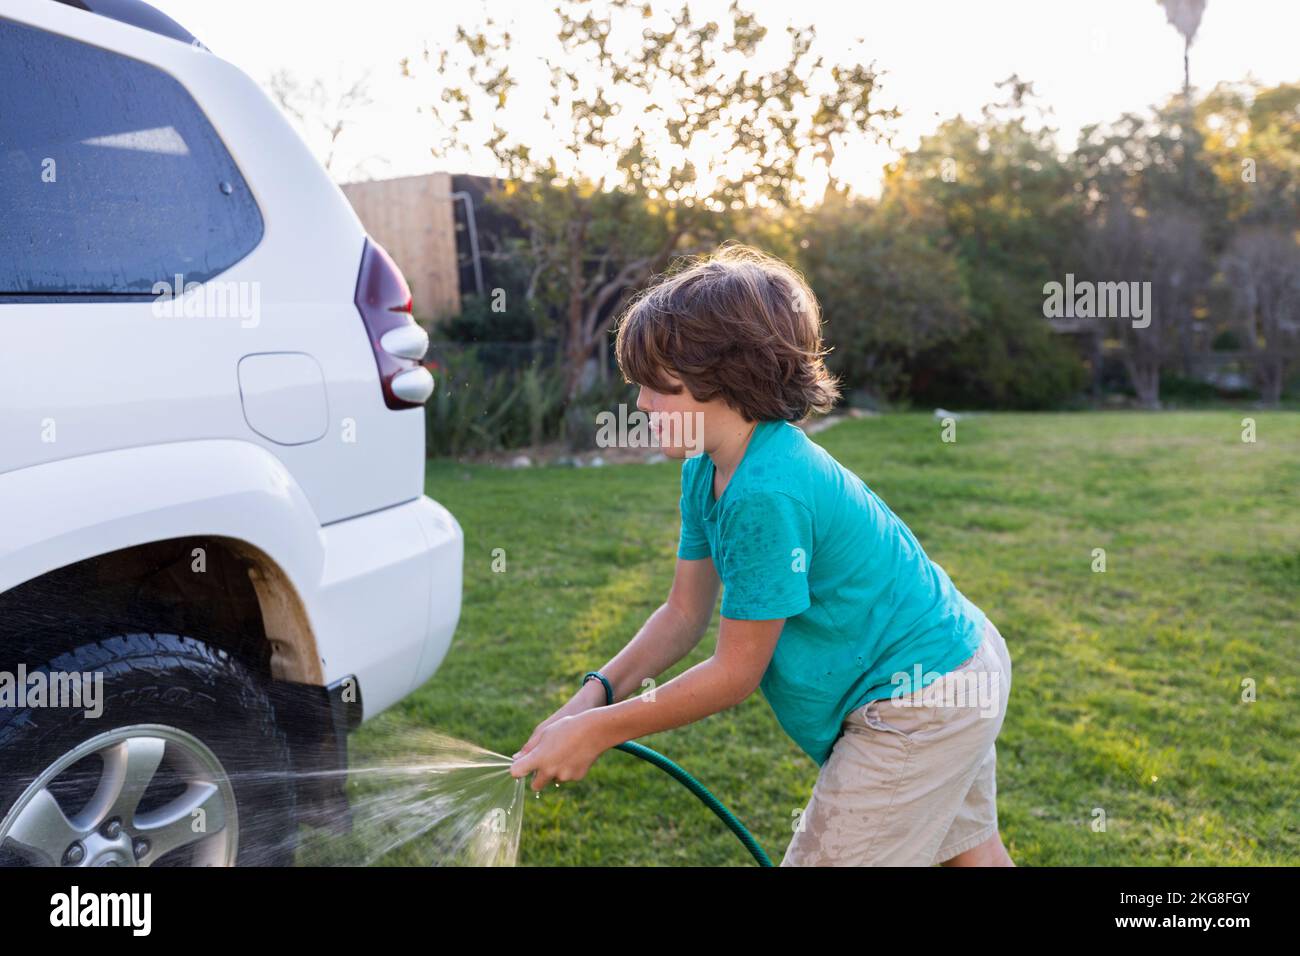 Garçon (8-9) lavage SUV sur grande pelouse verte Banque D'Images